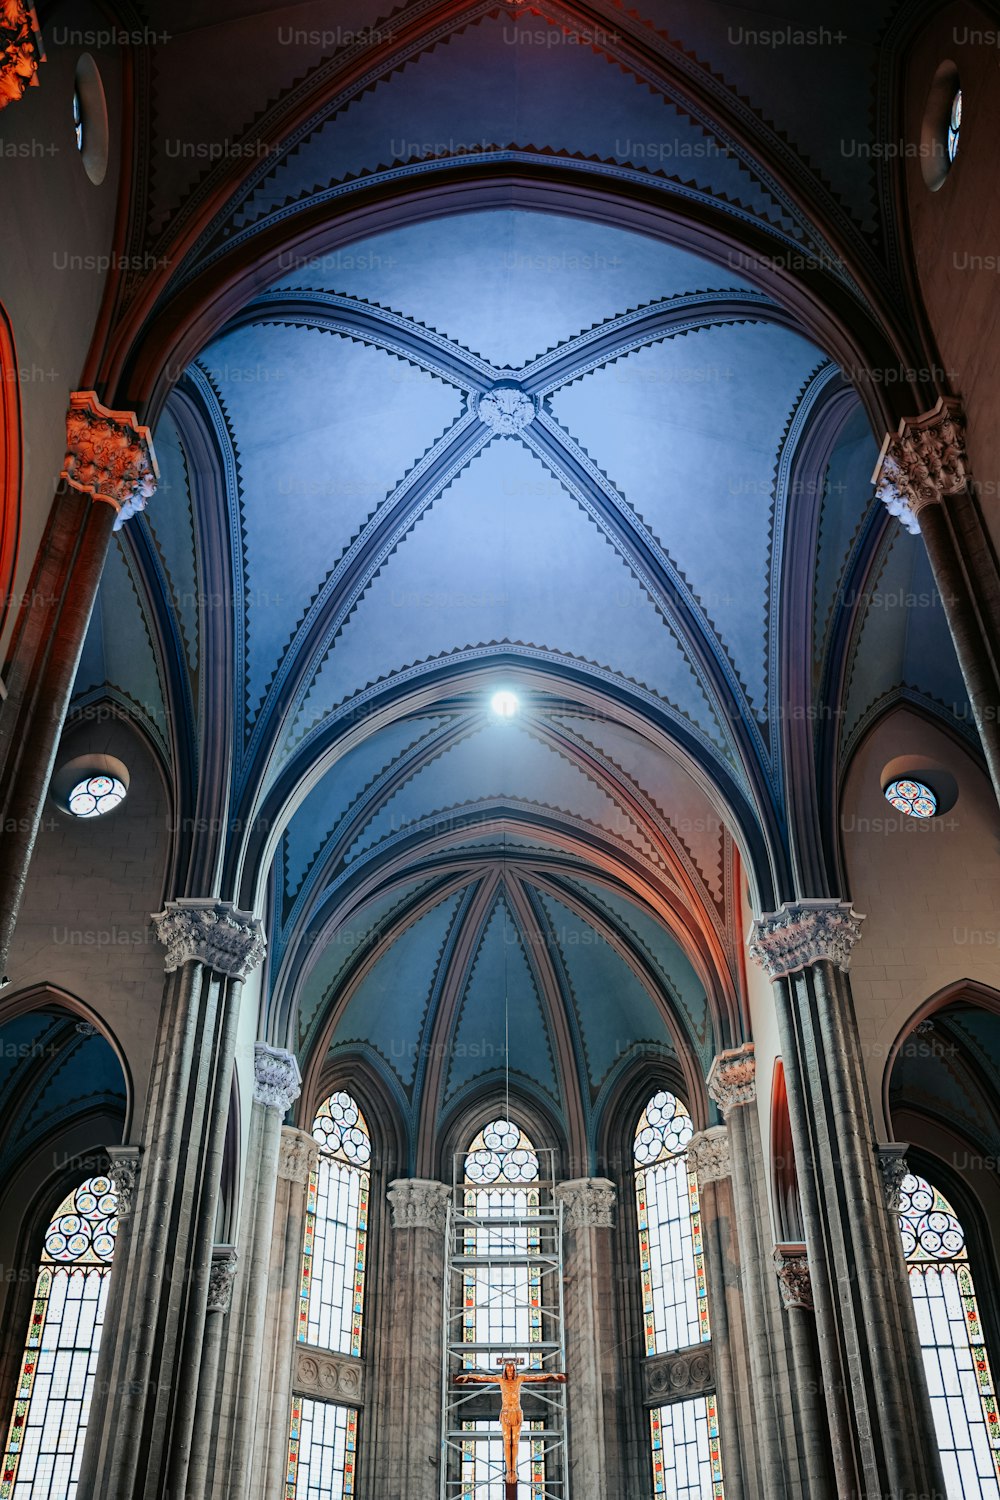 高いアーチ型の天井とステンドグラスの窓がある大きな大聖堂